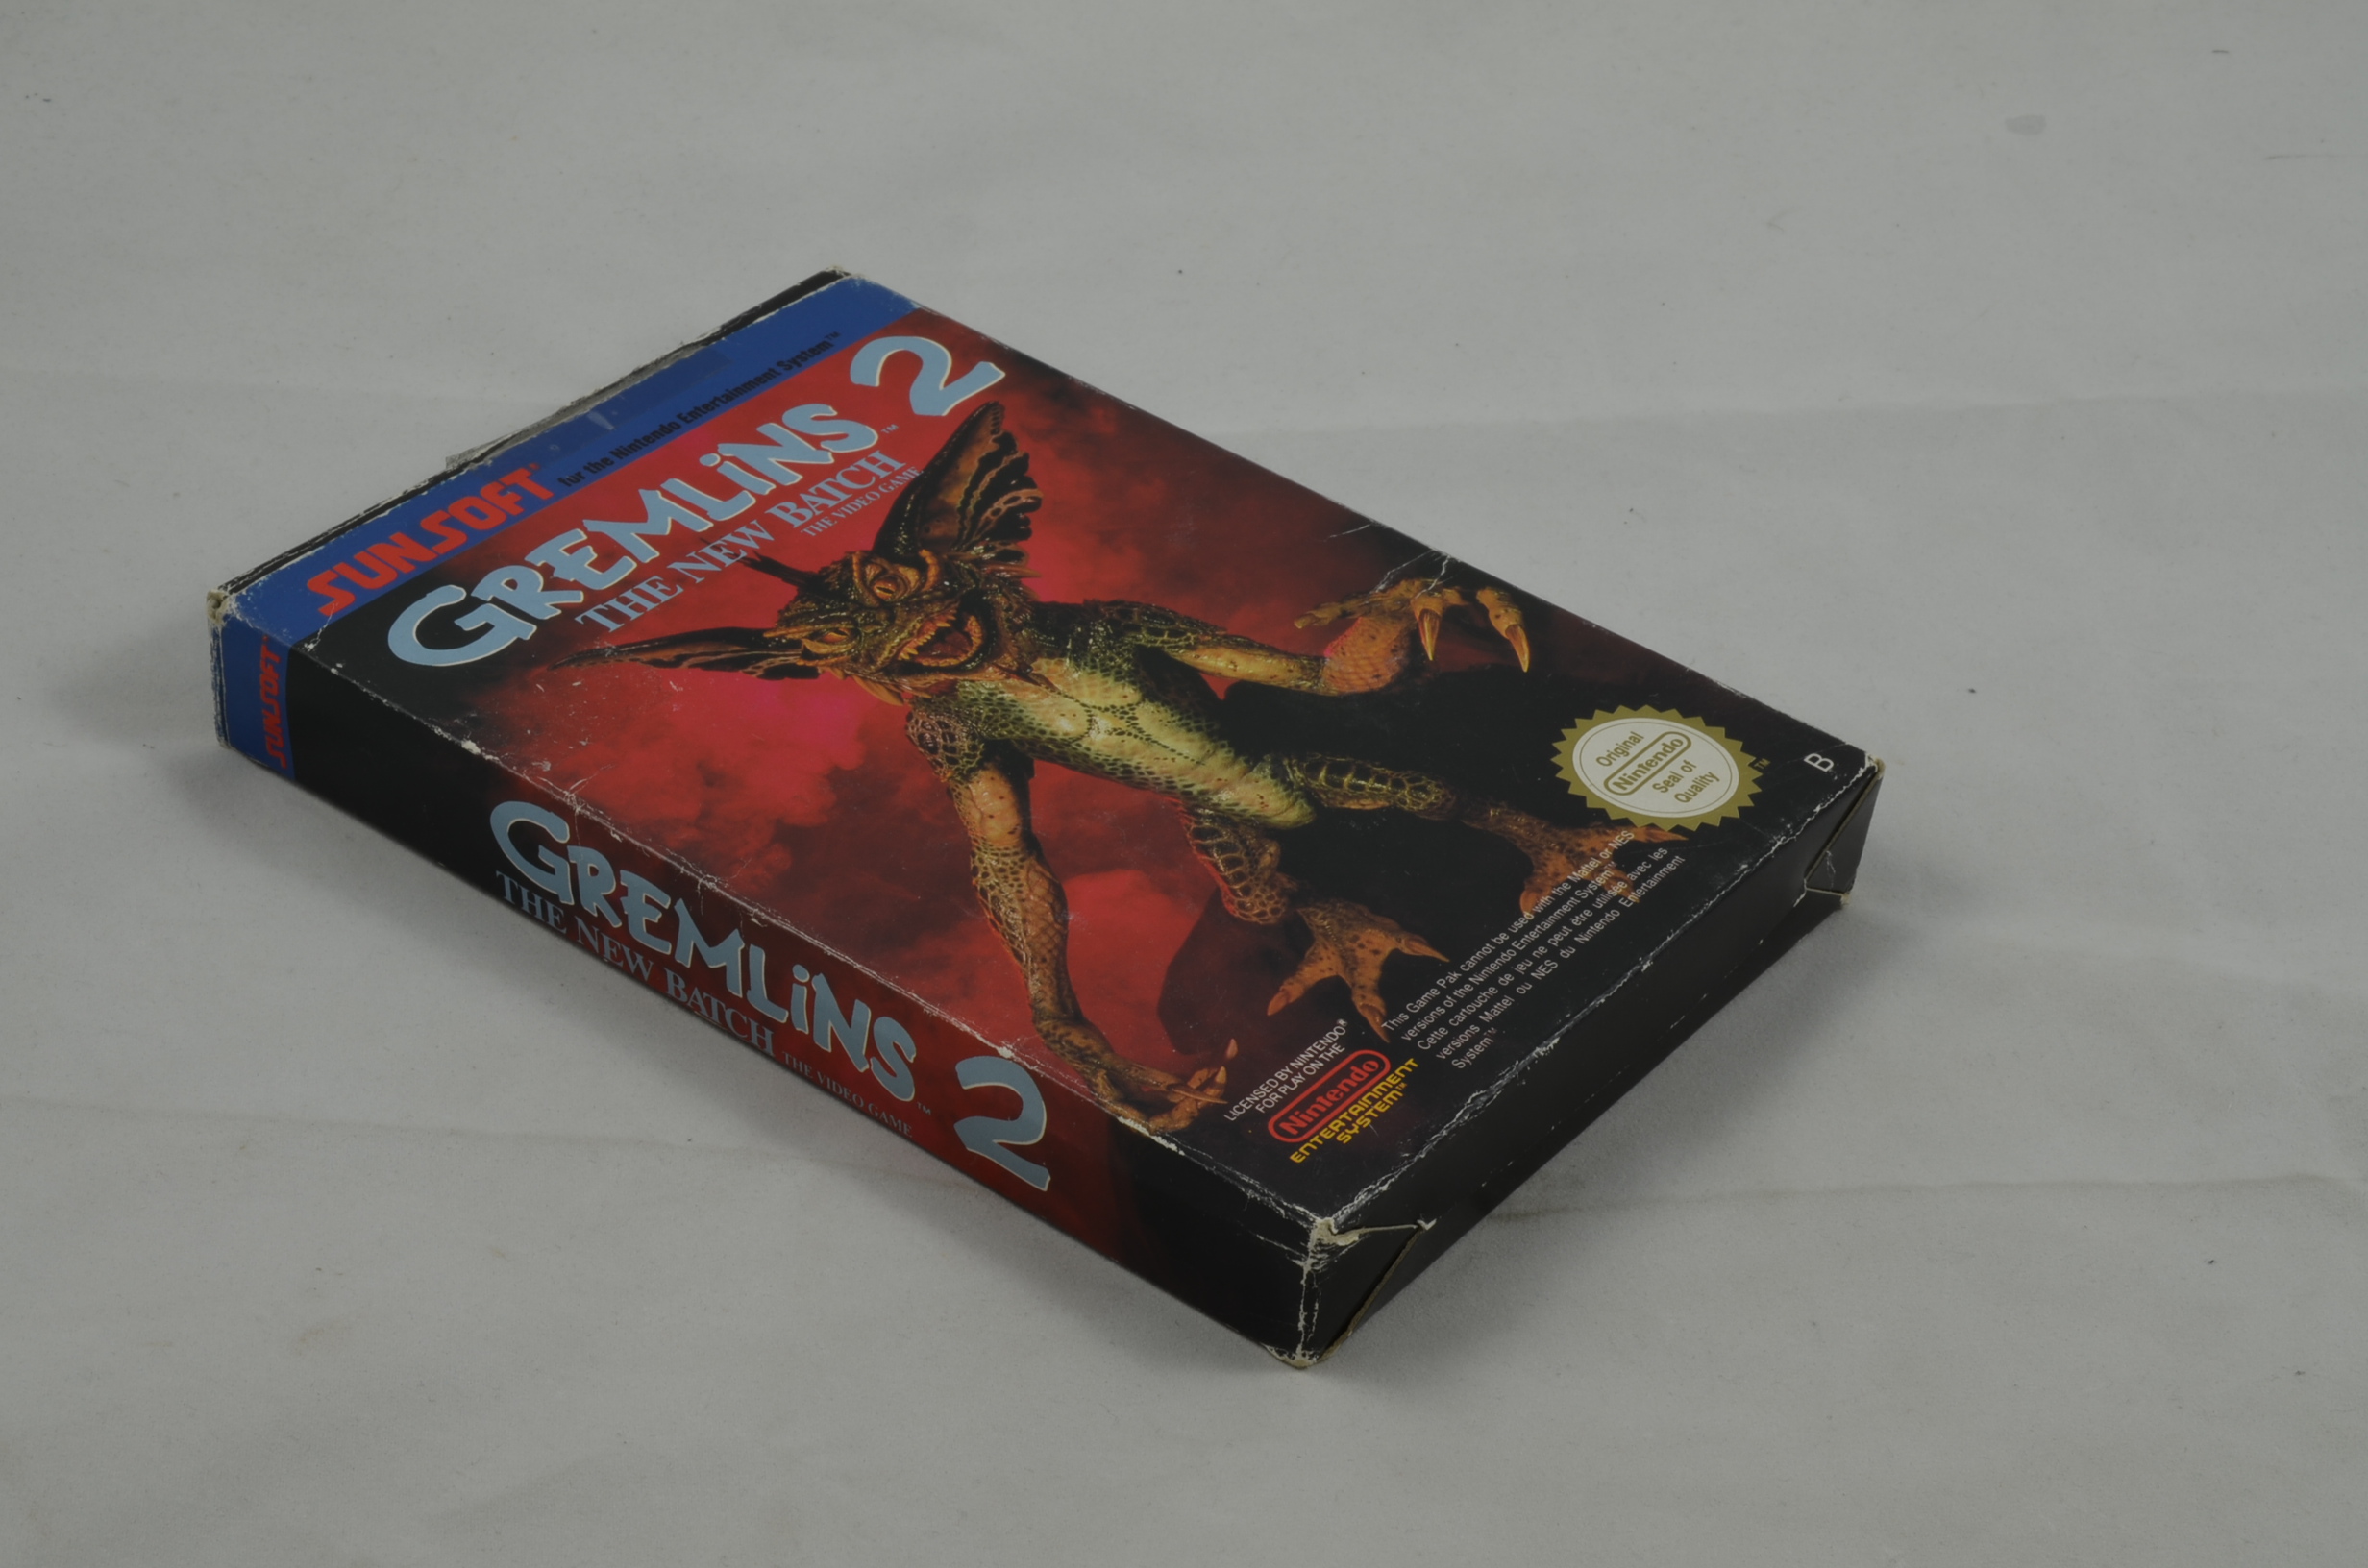 Produktbild von Gremlins 2 NES Spiel CIB #2